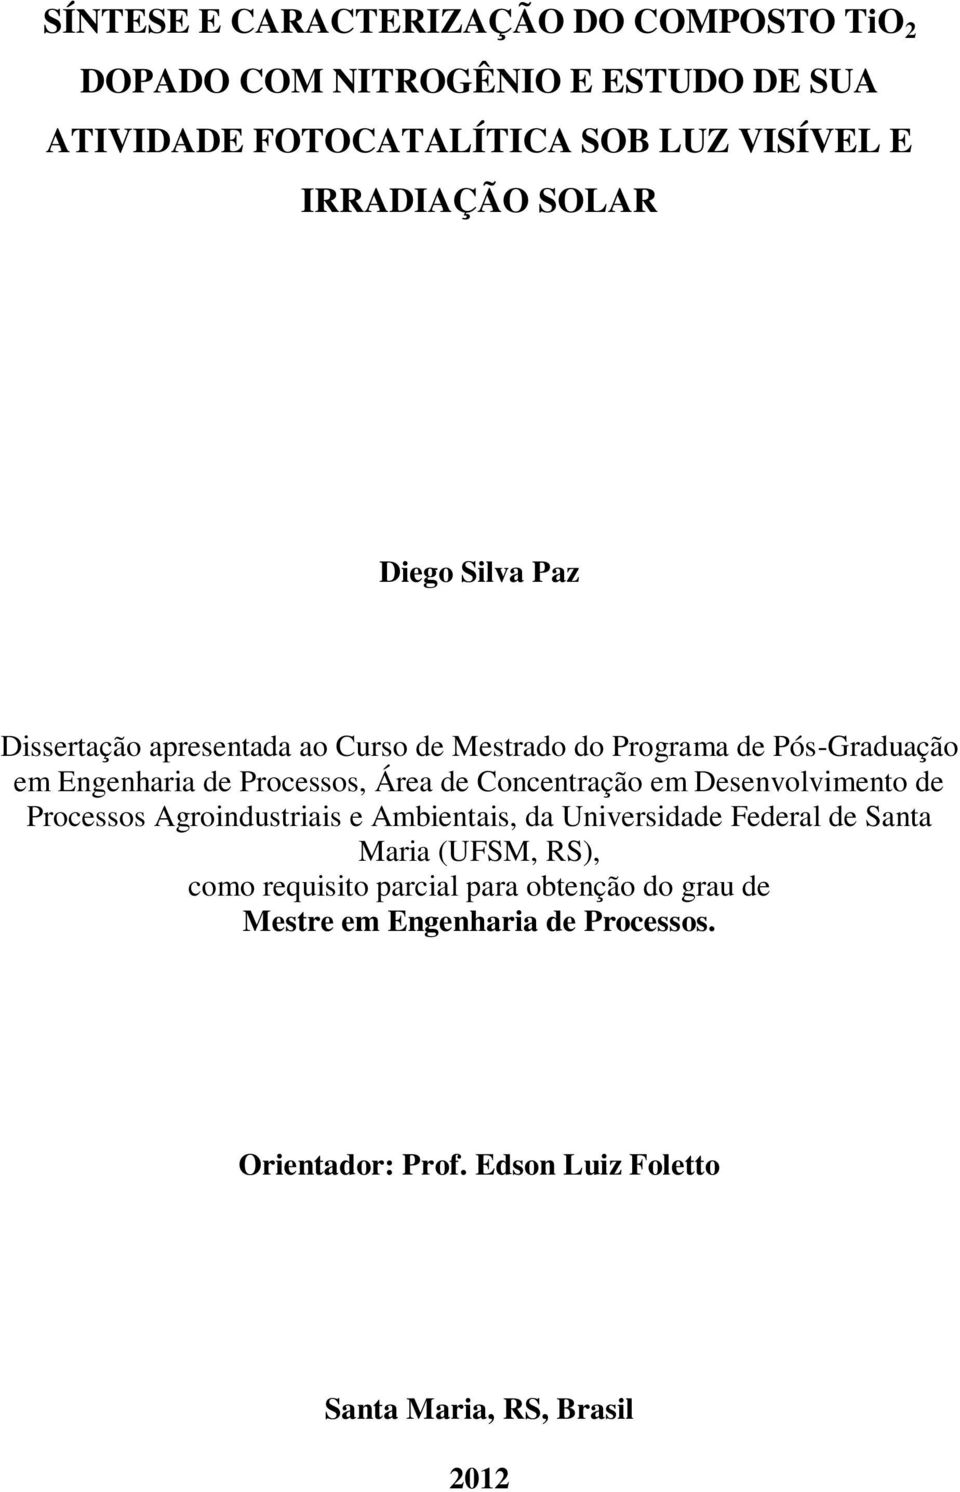 Concentração em Desenvolvimento de Processos Agroindustriais e Ambientais, da Universidade Federal de Santa Maria (UFSM, RS), como